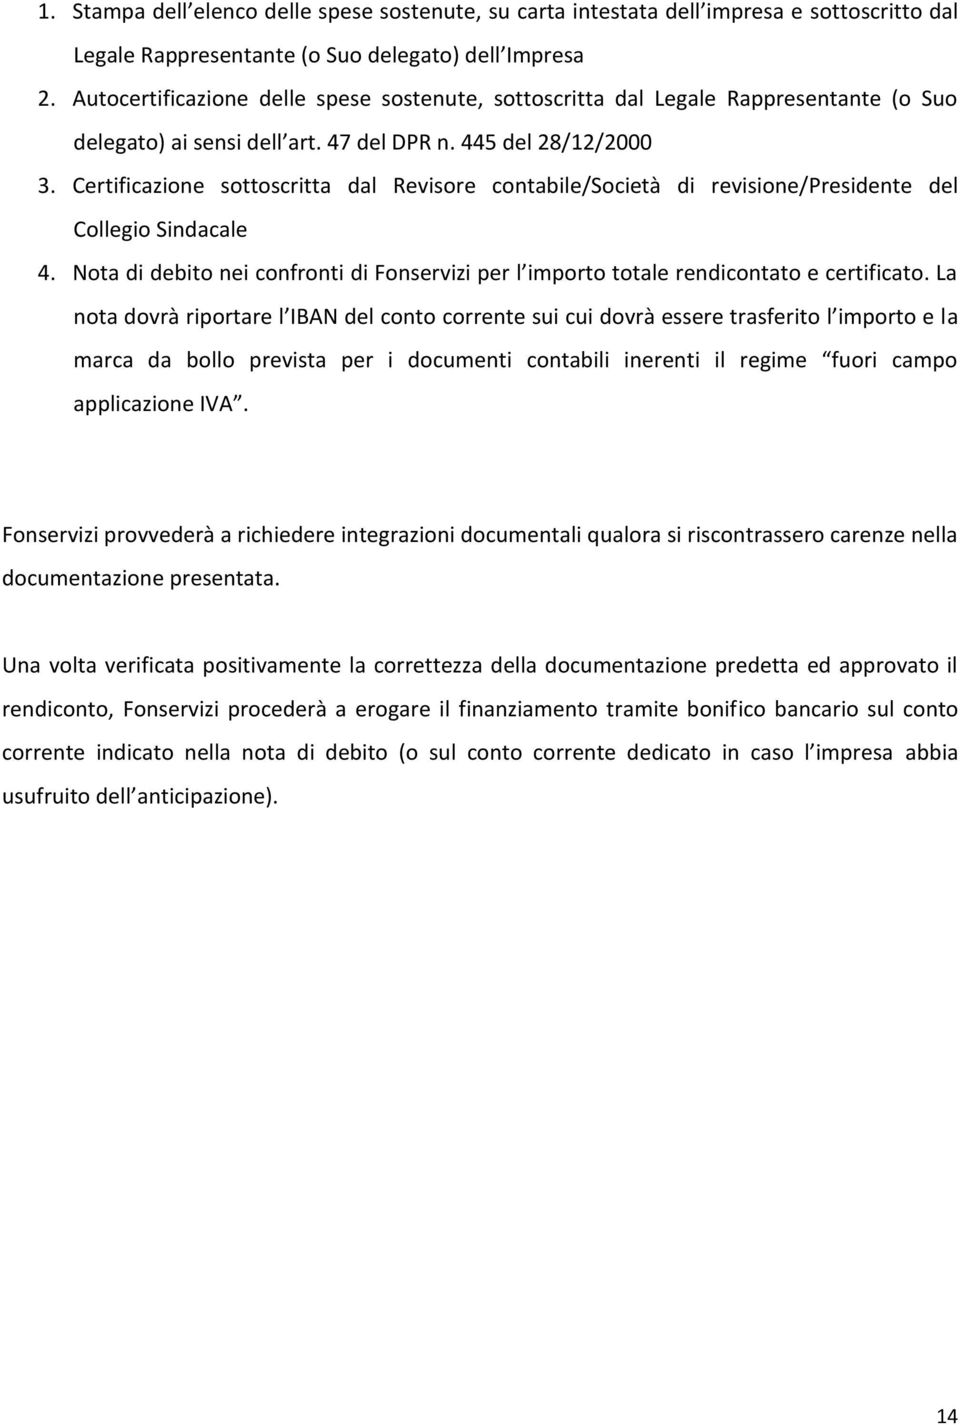 Certificazione sottoscritta dal Revisore contabile/società di revisione/presidente del Collegio Sindacale 4. Nota di debito nei confronti di Fonservizi per l importo totale rendicontato e certificato.